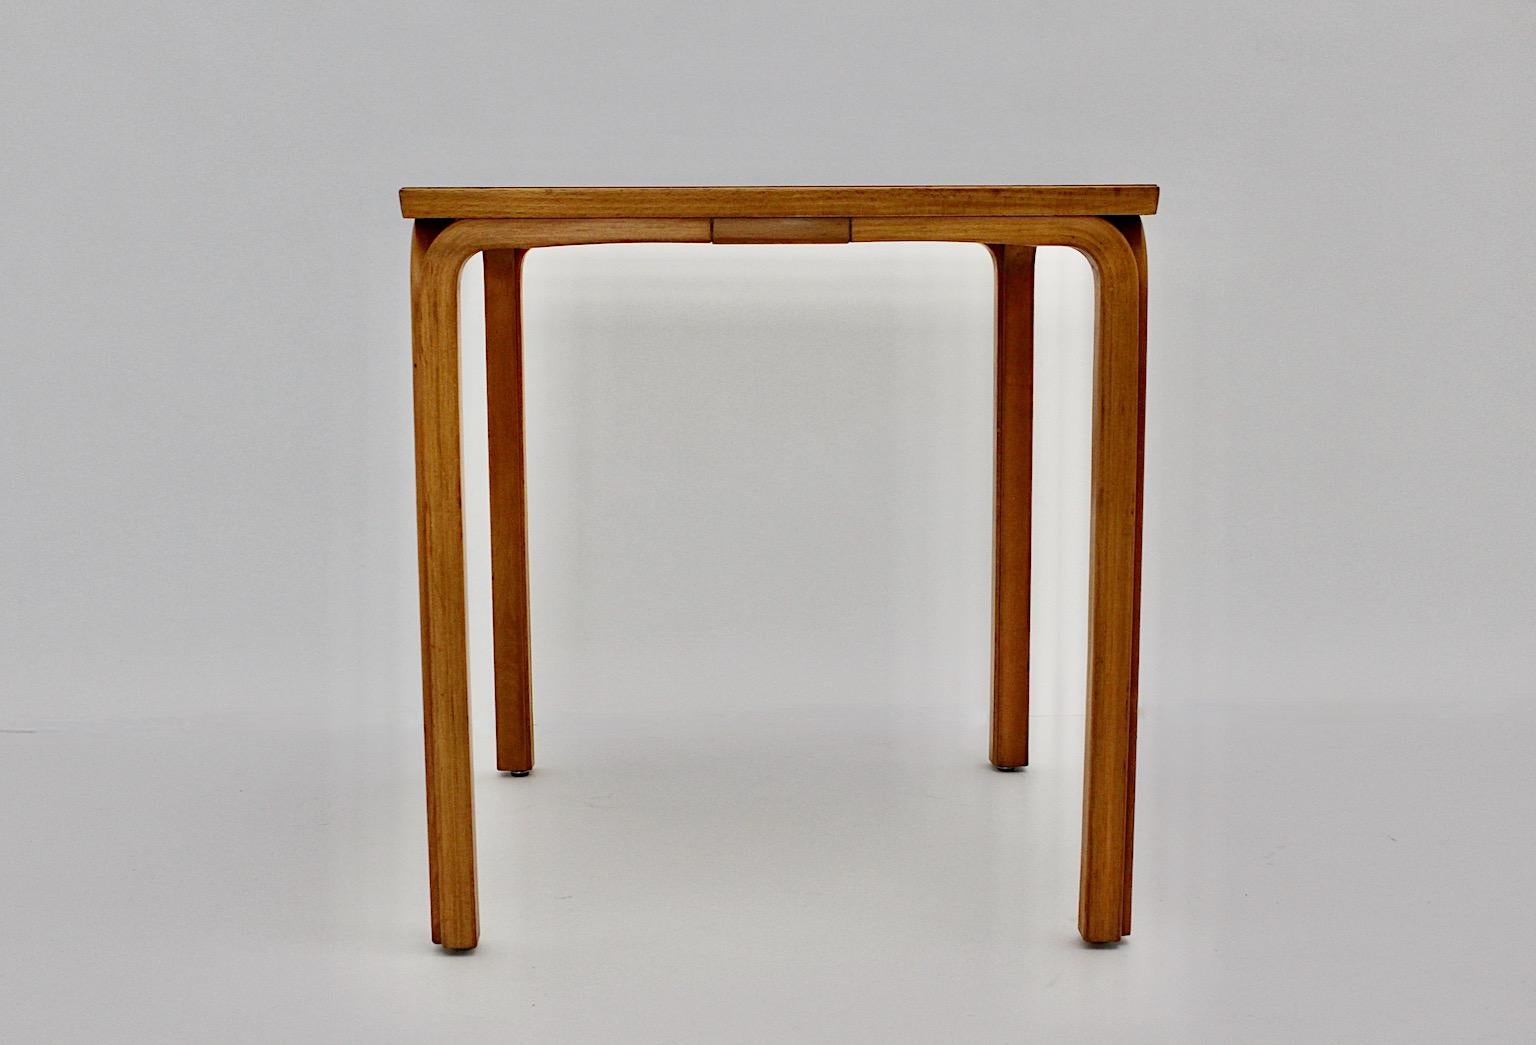 Skandinavischer Moderner Vintage Beistelltisch in quadratischer Form aus Sperrholz und Birke Esstisch oder Beistelltisch von Alvar Aalto entworfen um 1946 Finnland hergestellt um 1960.
Ein wunderschöner quadratischer Esstisch oder Beistelltisch aus